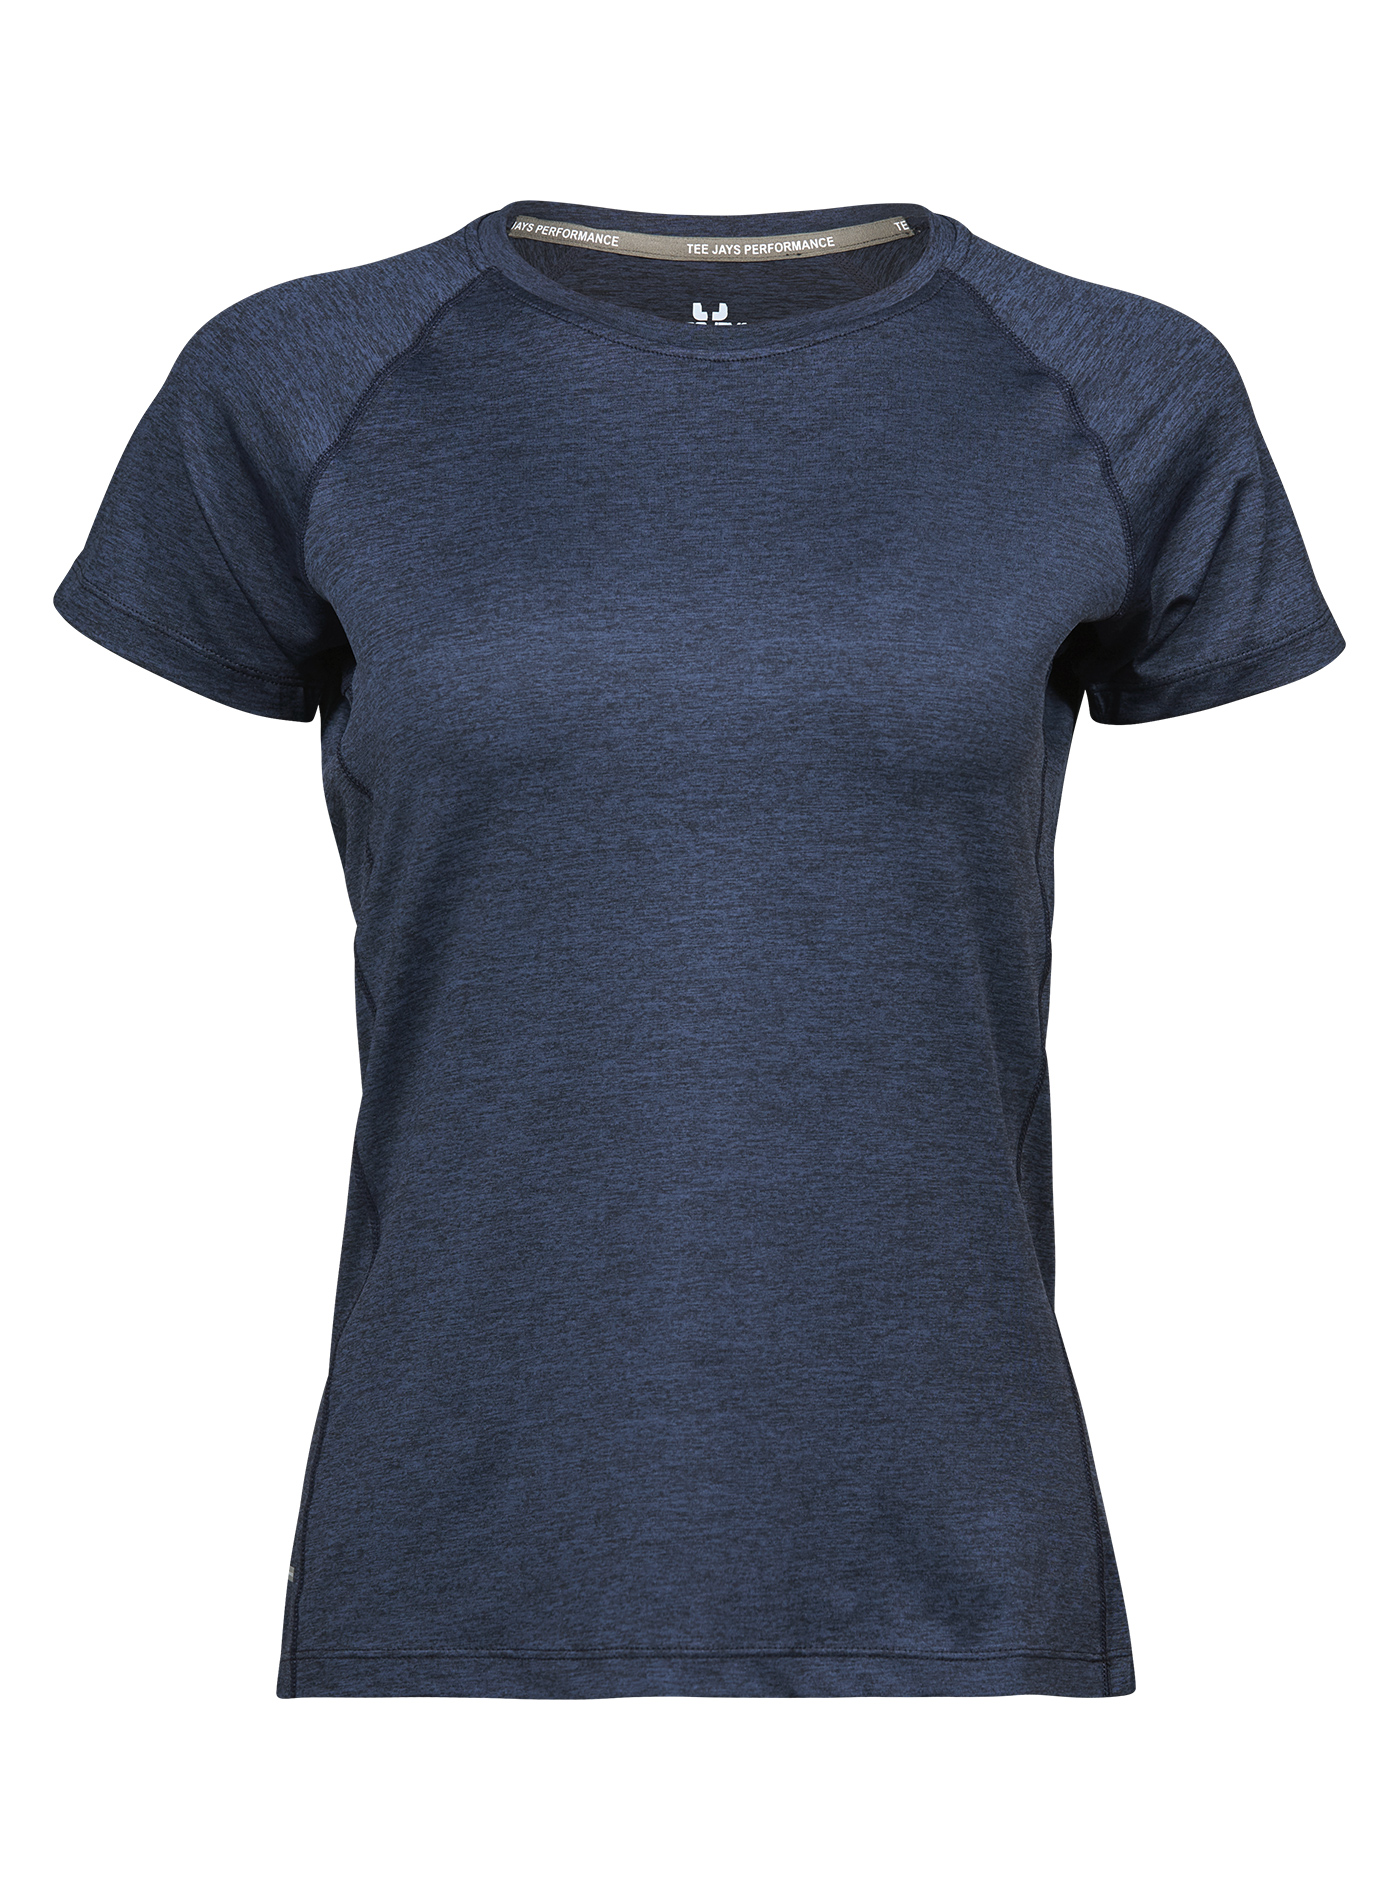 Dámské sportovní tričko cool dry Tee Jays - Temně modrá S